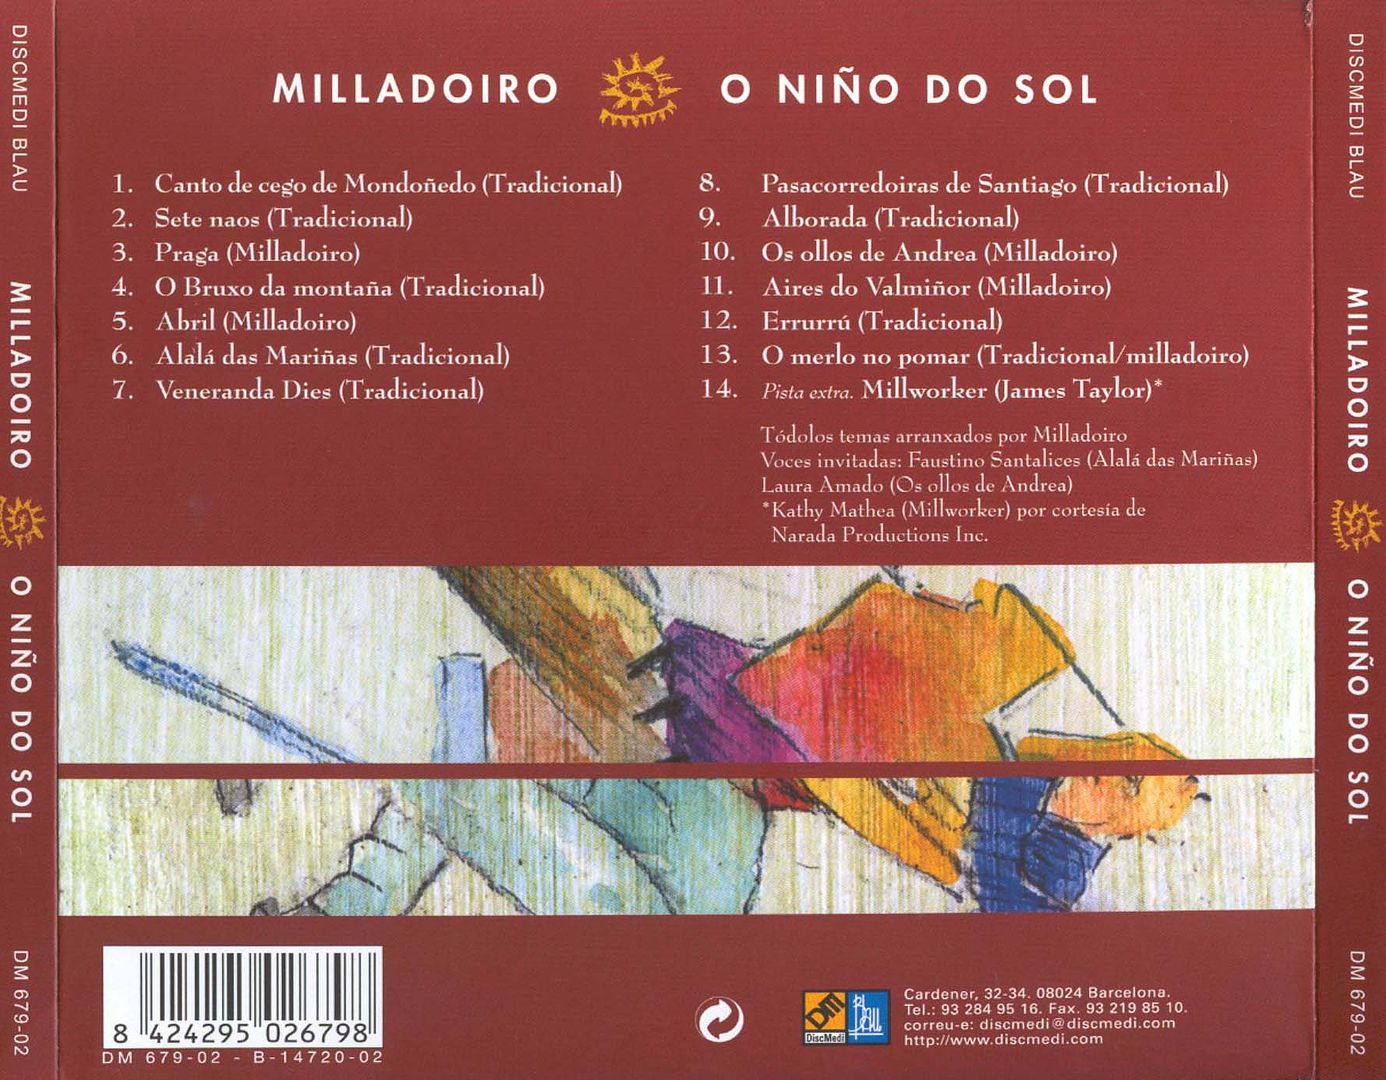 Oniodosolrev - Milladoiro: Discografia